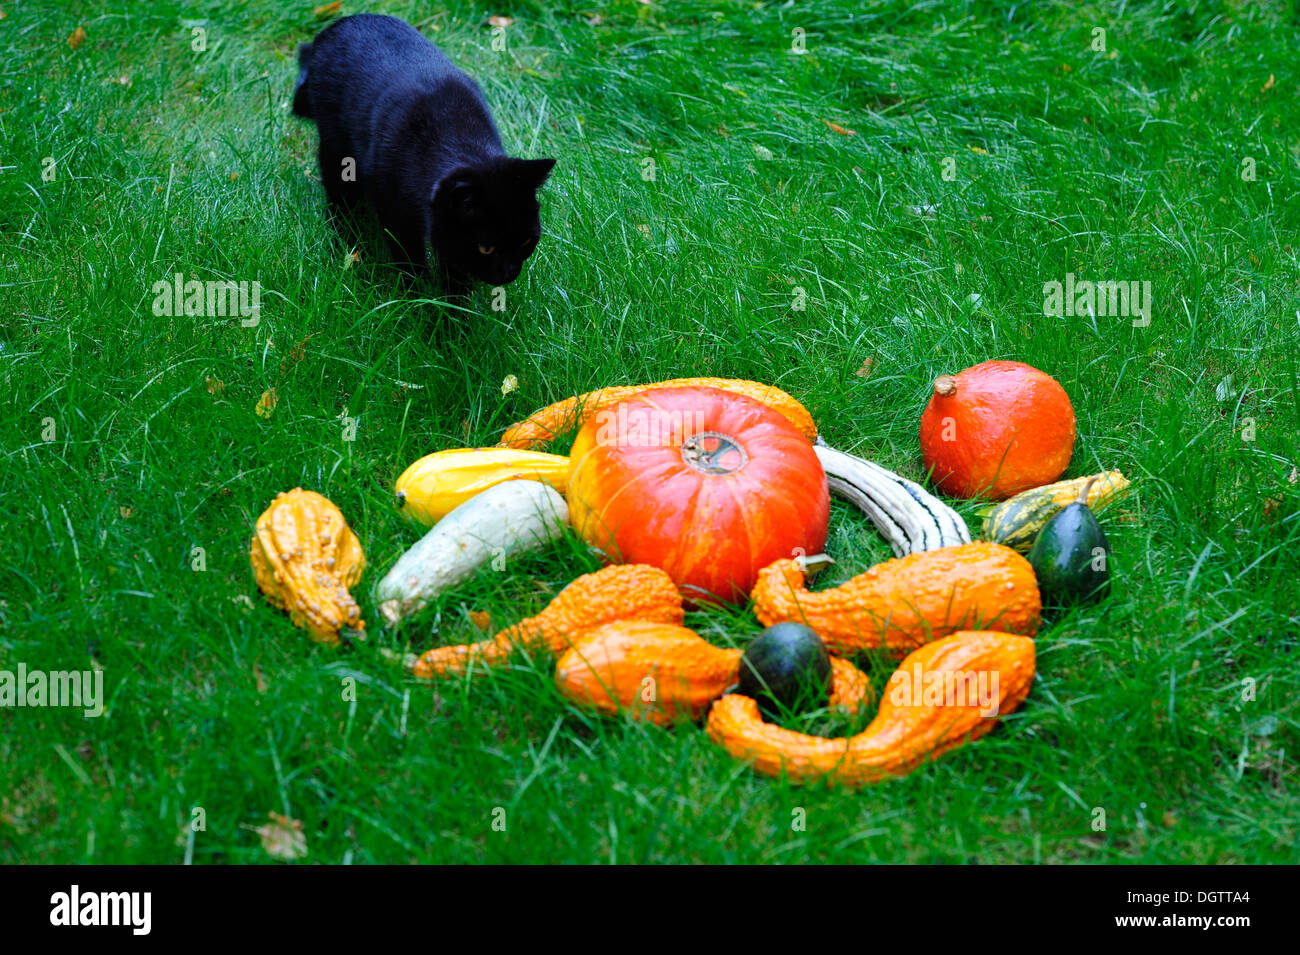 Domestic cat between pumpkins Stock Photo